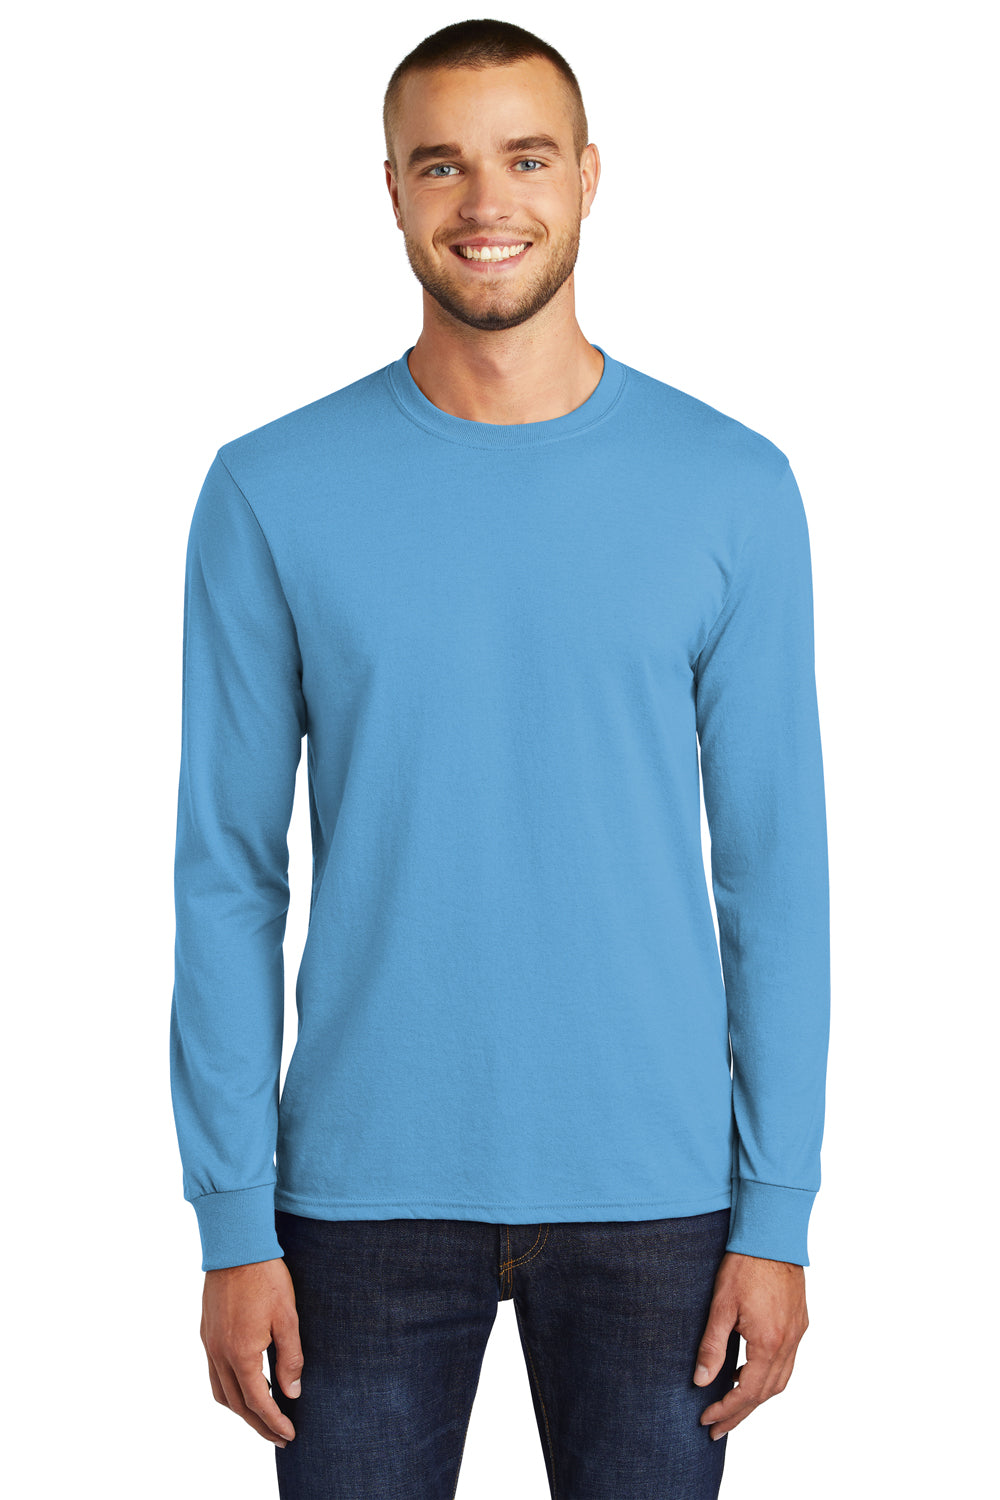 Port & Company PC55LS Mens Core Long Sleeve Crewneck T-Shirt Aqua Blue Front